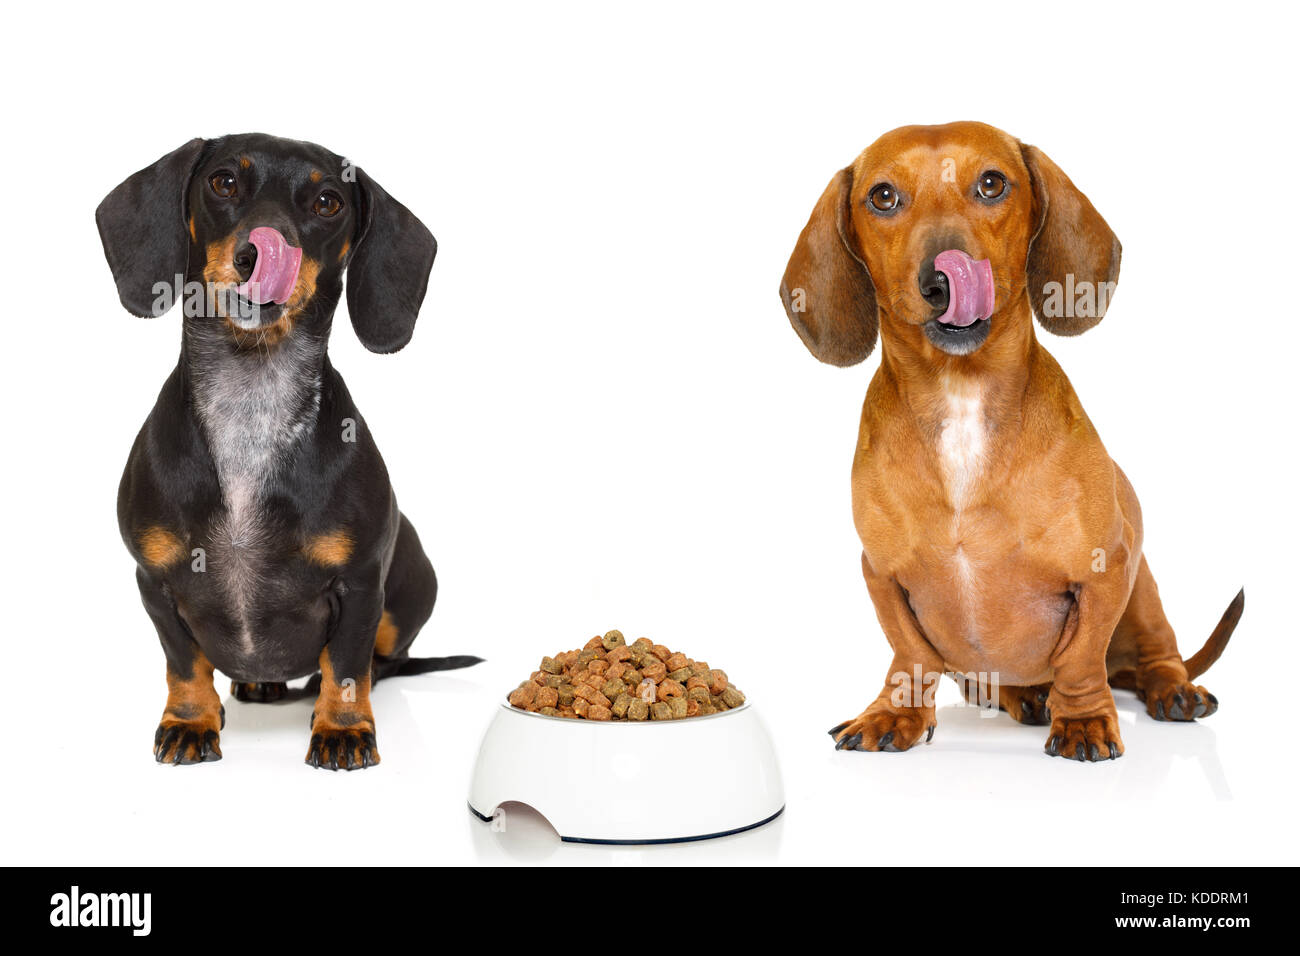 Hungrig paar Dackel wurst Hunde mit gesunden Lebensmitteln Schüssel, auf weißem Hintergrund Stockfoto